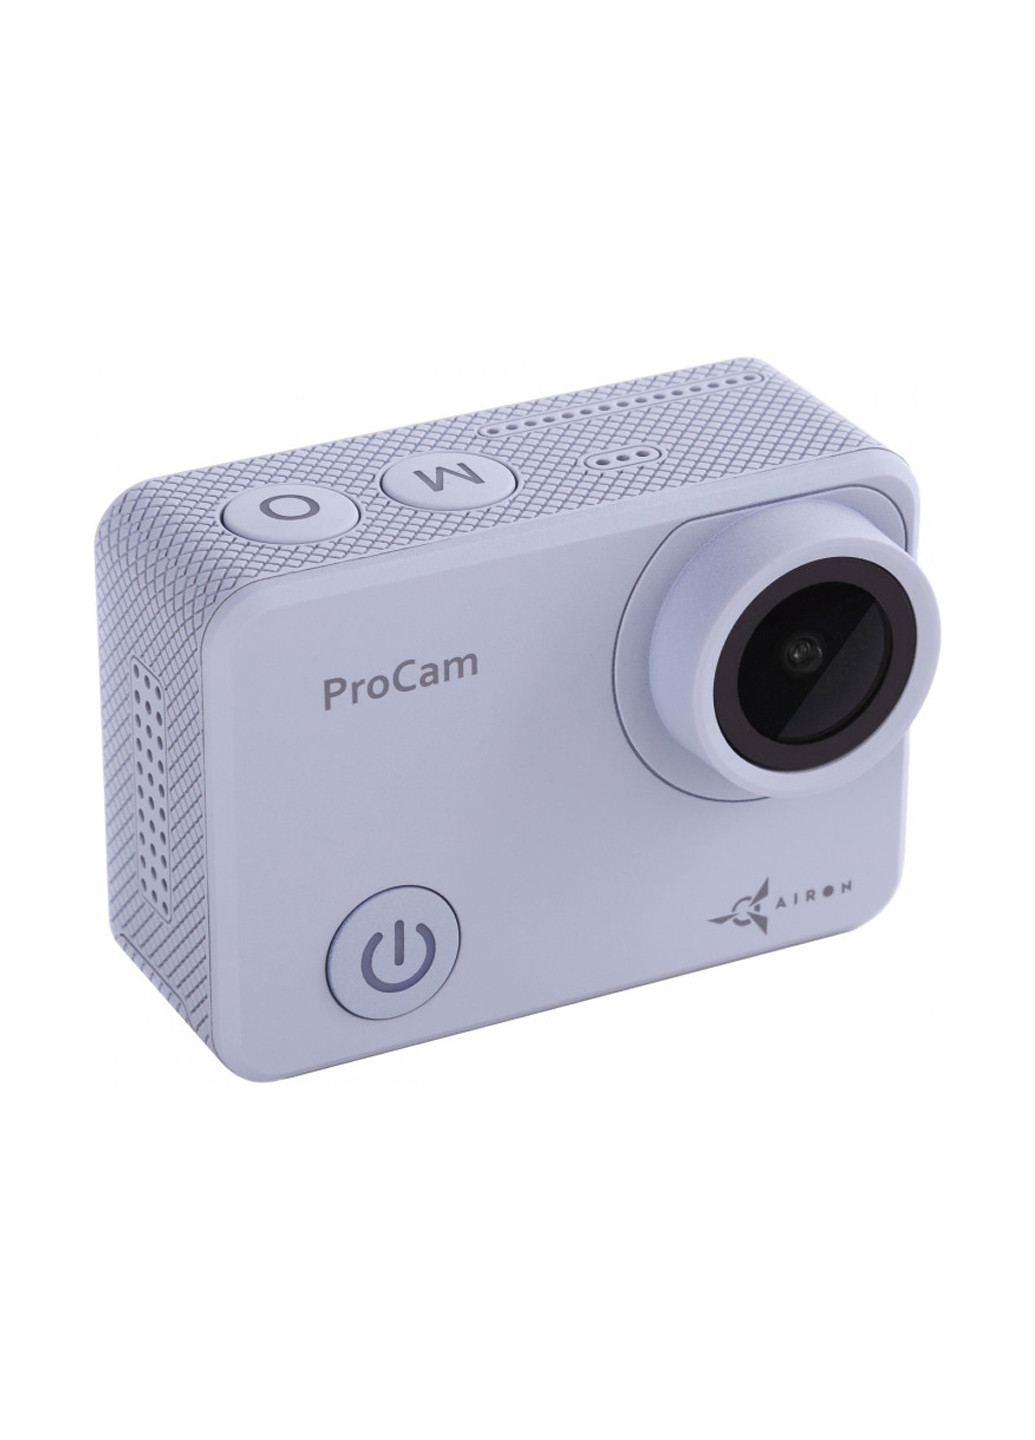 Экшн-камера Airon procam 7 (149757808)